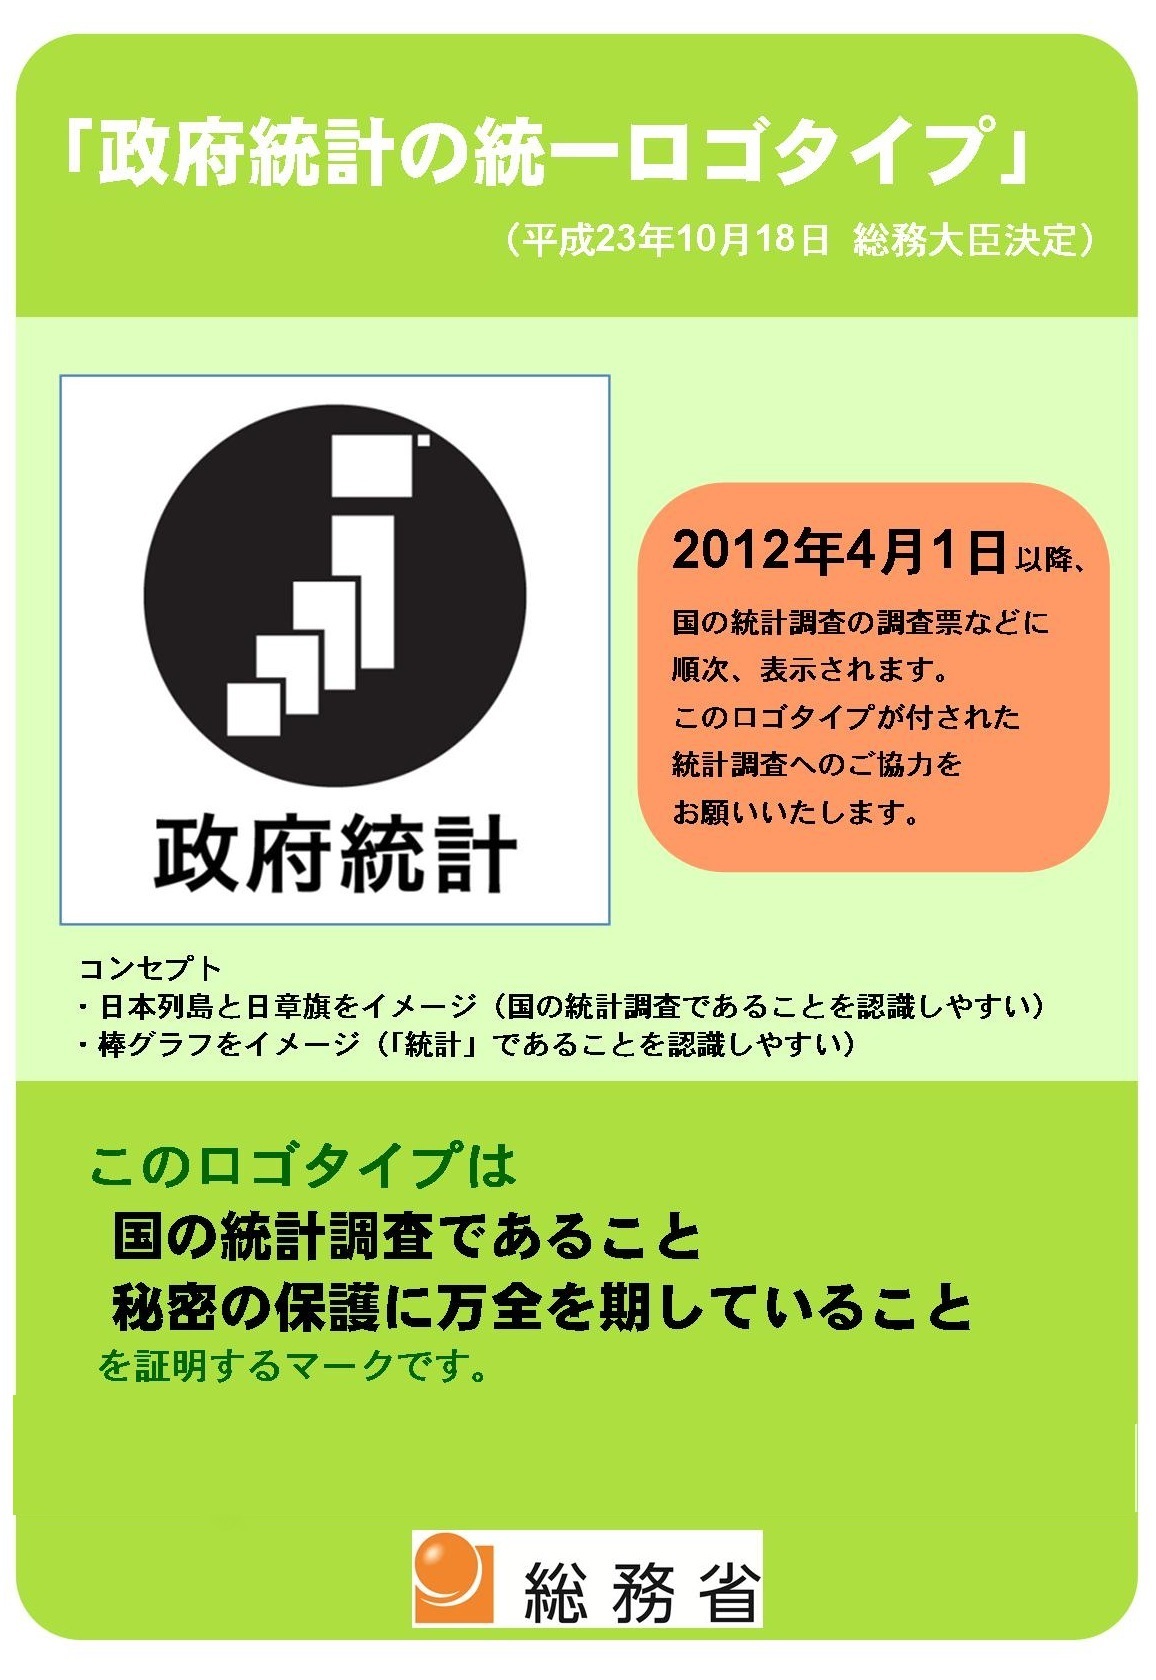 「政府統計の統一ロゴタイプ」（平成23年10月18日　総務大臣決定）　2012年4月1日以降、国の統計調査の調査票などに順次表示されます。このロゴタイプが添付された統計調査へのご協力をお願いいたします。　コンセプト・日本列島と日章旗をイメージ（国の統計調査であることを認識しやすい）・棒グラフをイメージ（「統計」であることを認識しやすい）　このロゴタイプは国の統計調査であること　秘密の保護に万全を期していることを証明するマークです。　総務省